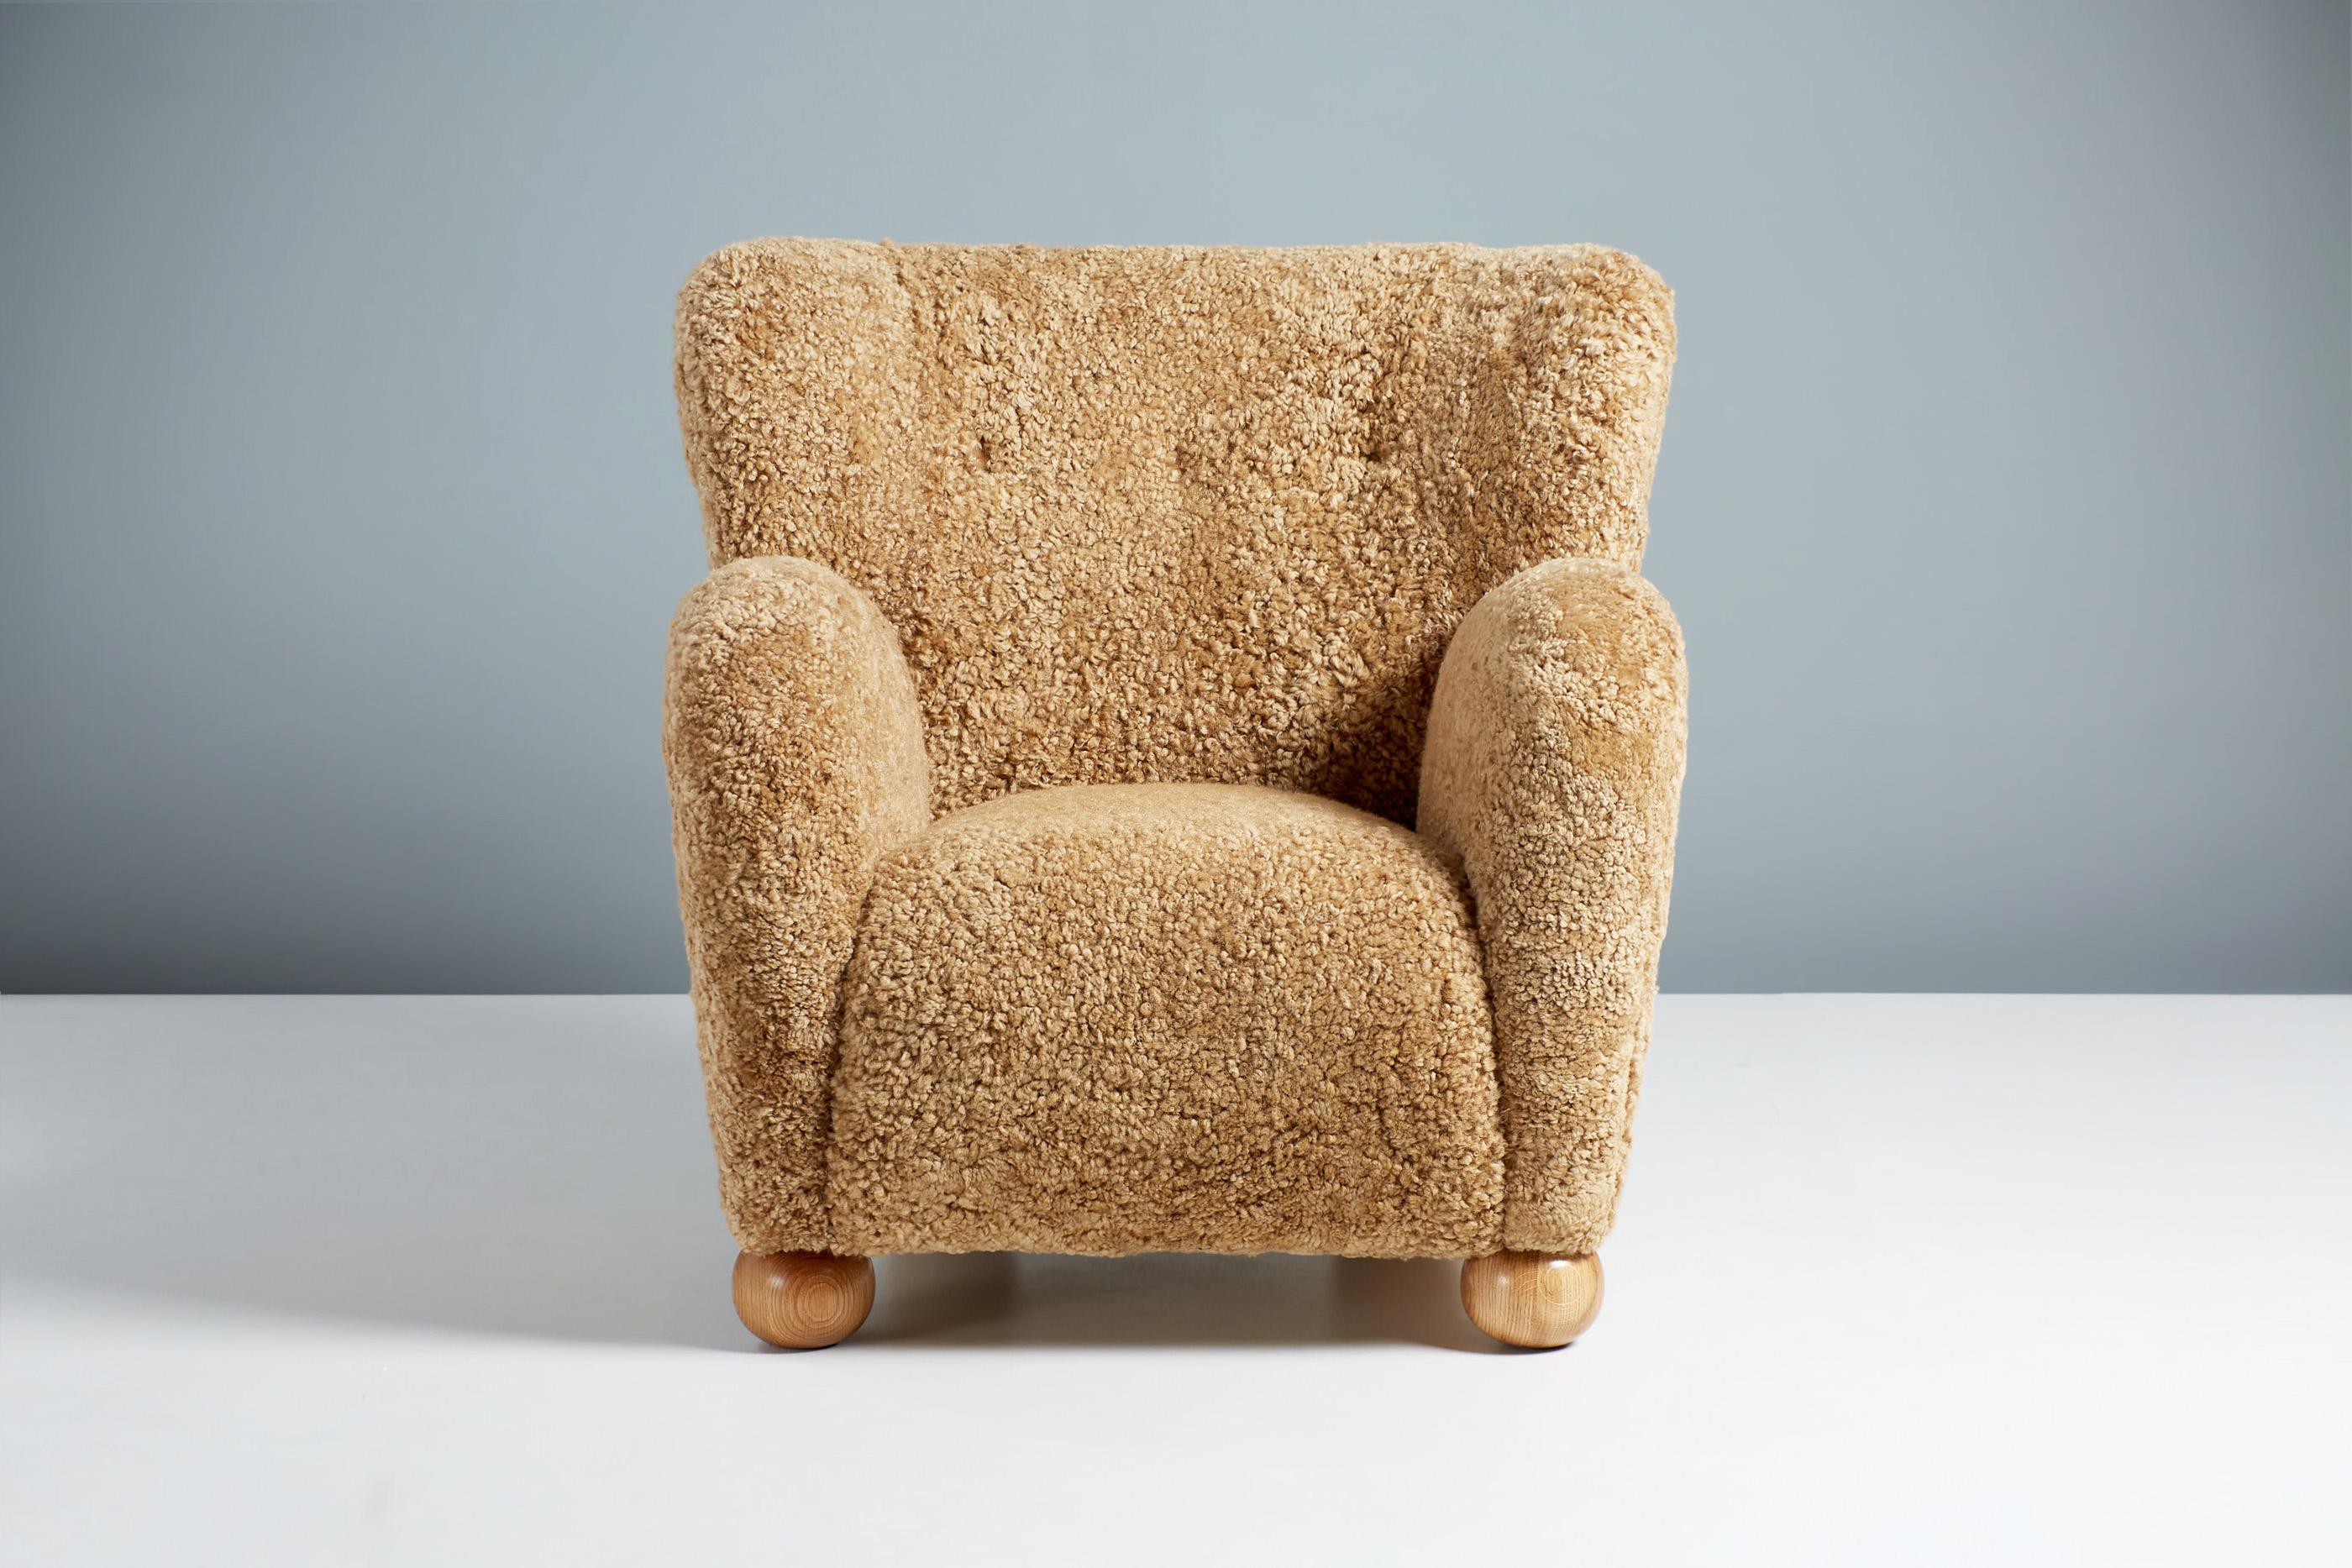 Dagmar design - Fauteuil Karu

Le fauteuil Karu est fabriqué à la main sur commande dans nos ateliers au Royaume-Uni, avec un cadre en bois de hêtre massif et une assise entièrement suspendue. Les pieds ronds sont disponibles en chêne huilé, en